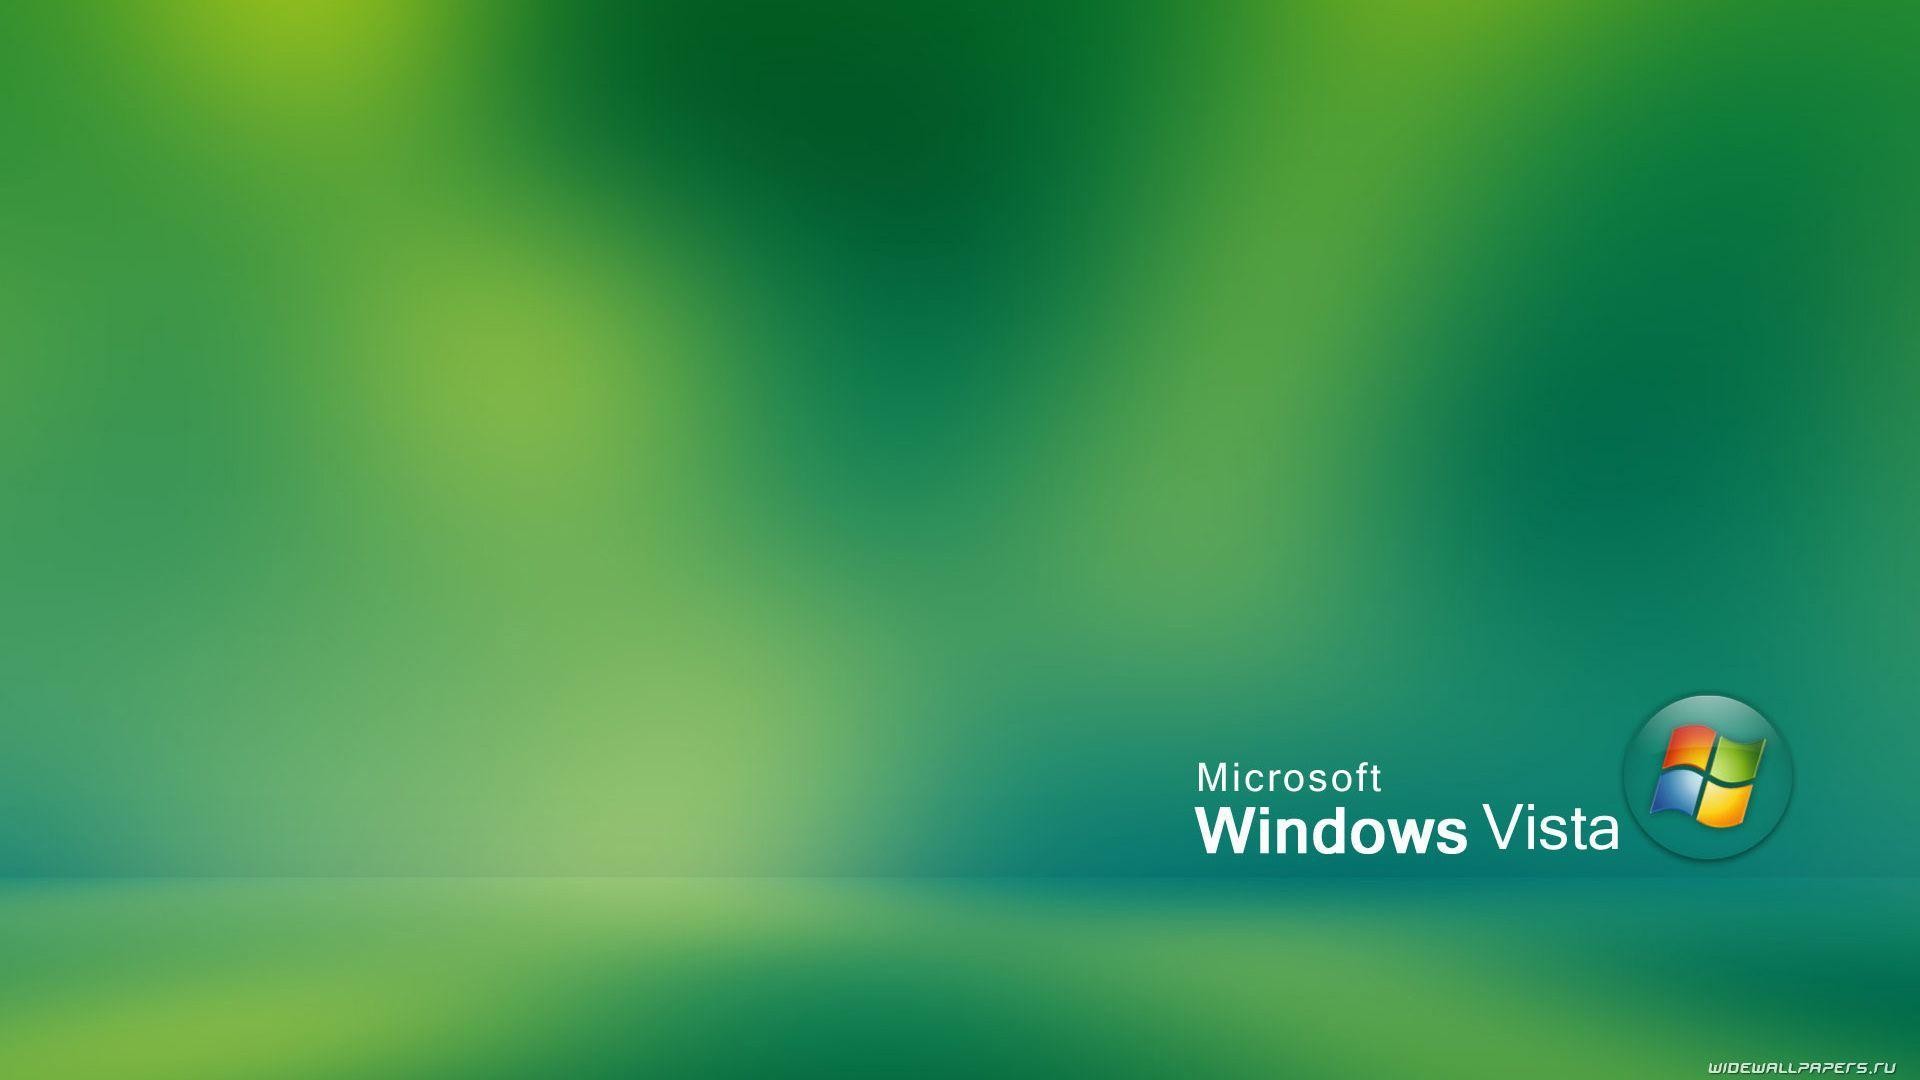 Hình nền Windows Vista với thiết kế tinh tế và độ phân giải cao sẽ mang đến cho bạn cảm giác mới mẻ và đầy sức sống. Hãy cập nhật ngay những hình nền đẹp mắt này để tạo nên không gian làm việc hiện đại và sang trọng.